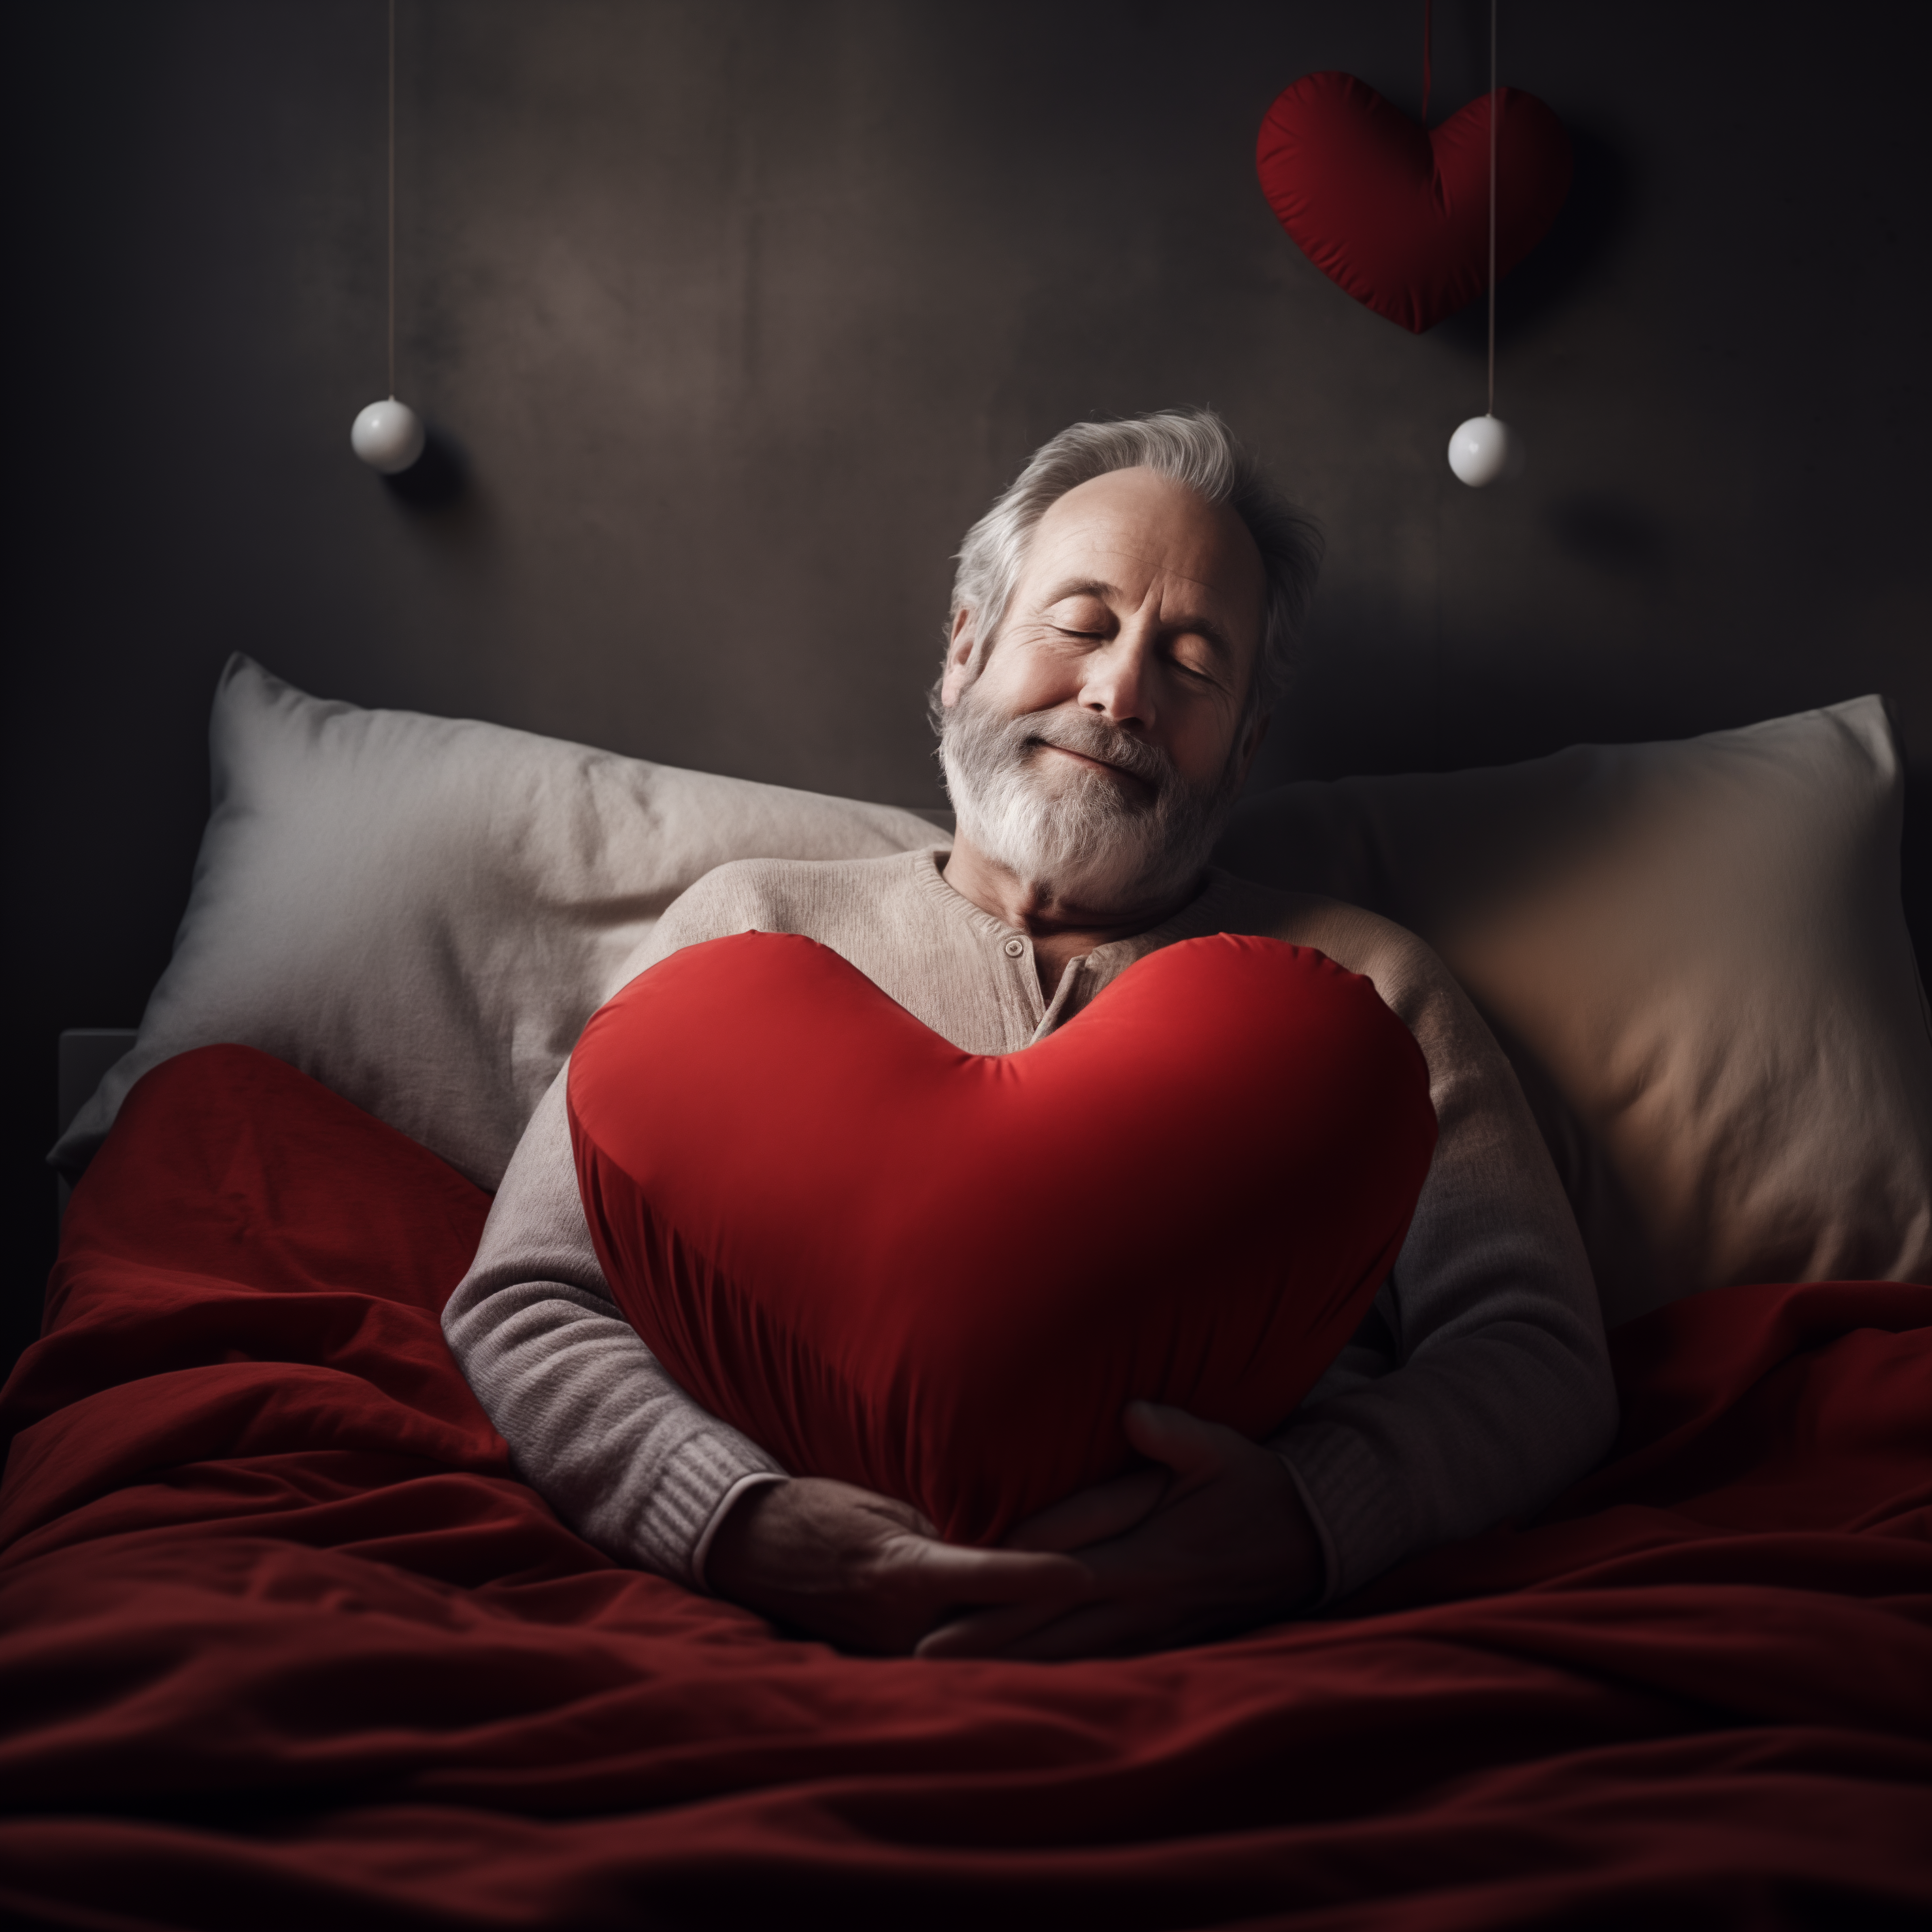 Le sommeil déterminant majeur de la santé cardiovasculaire